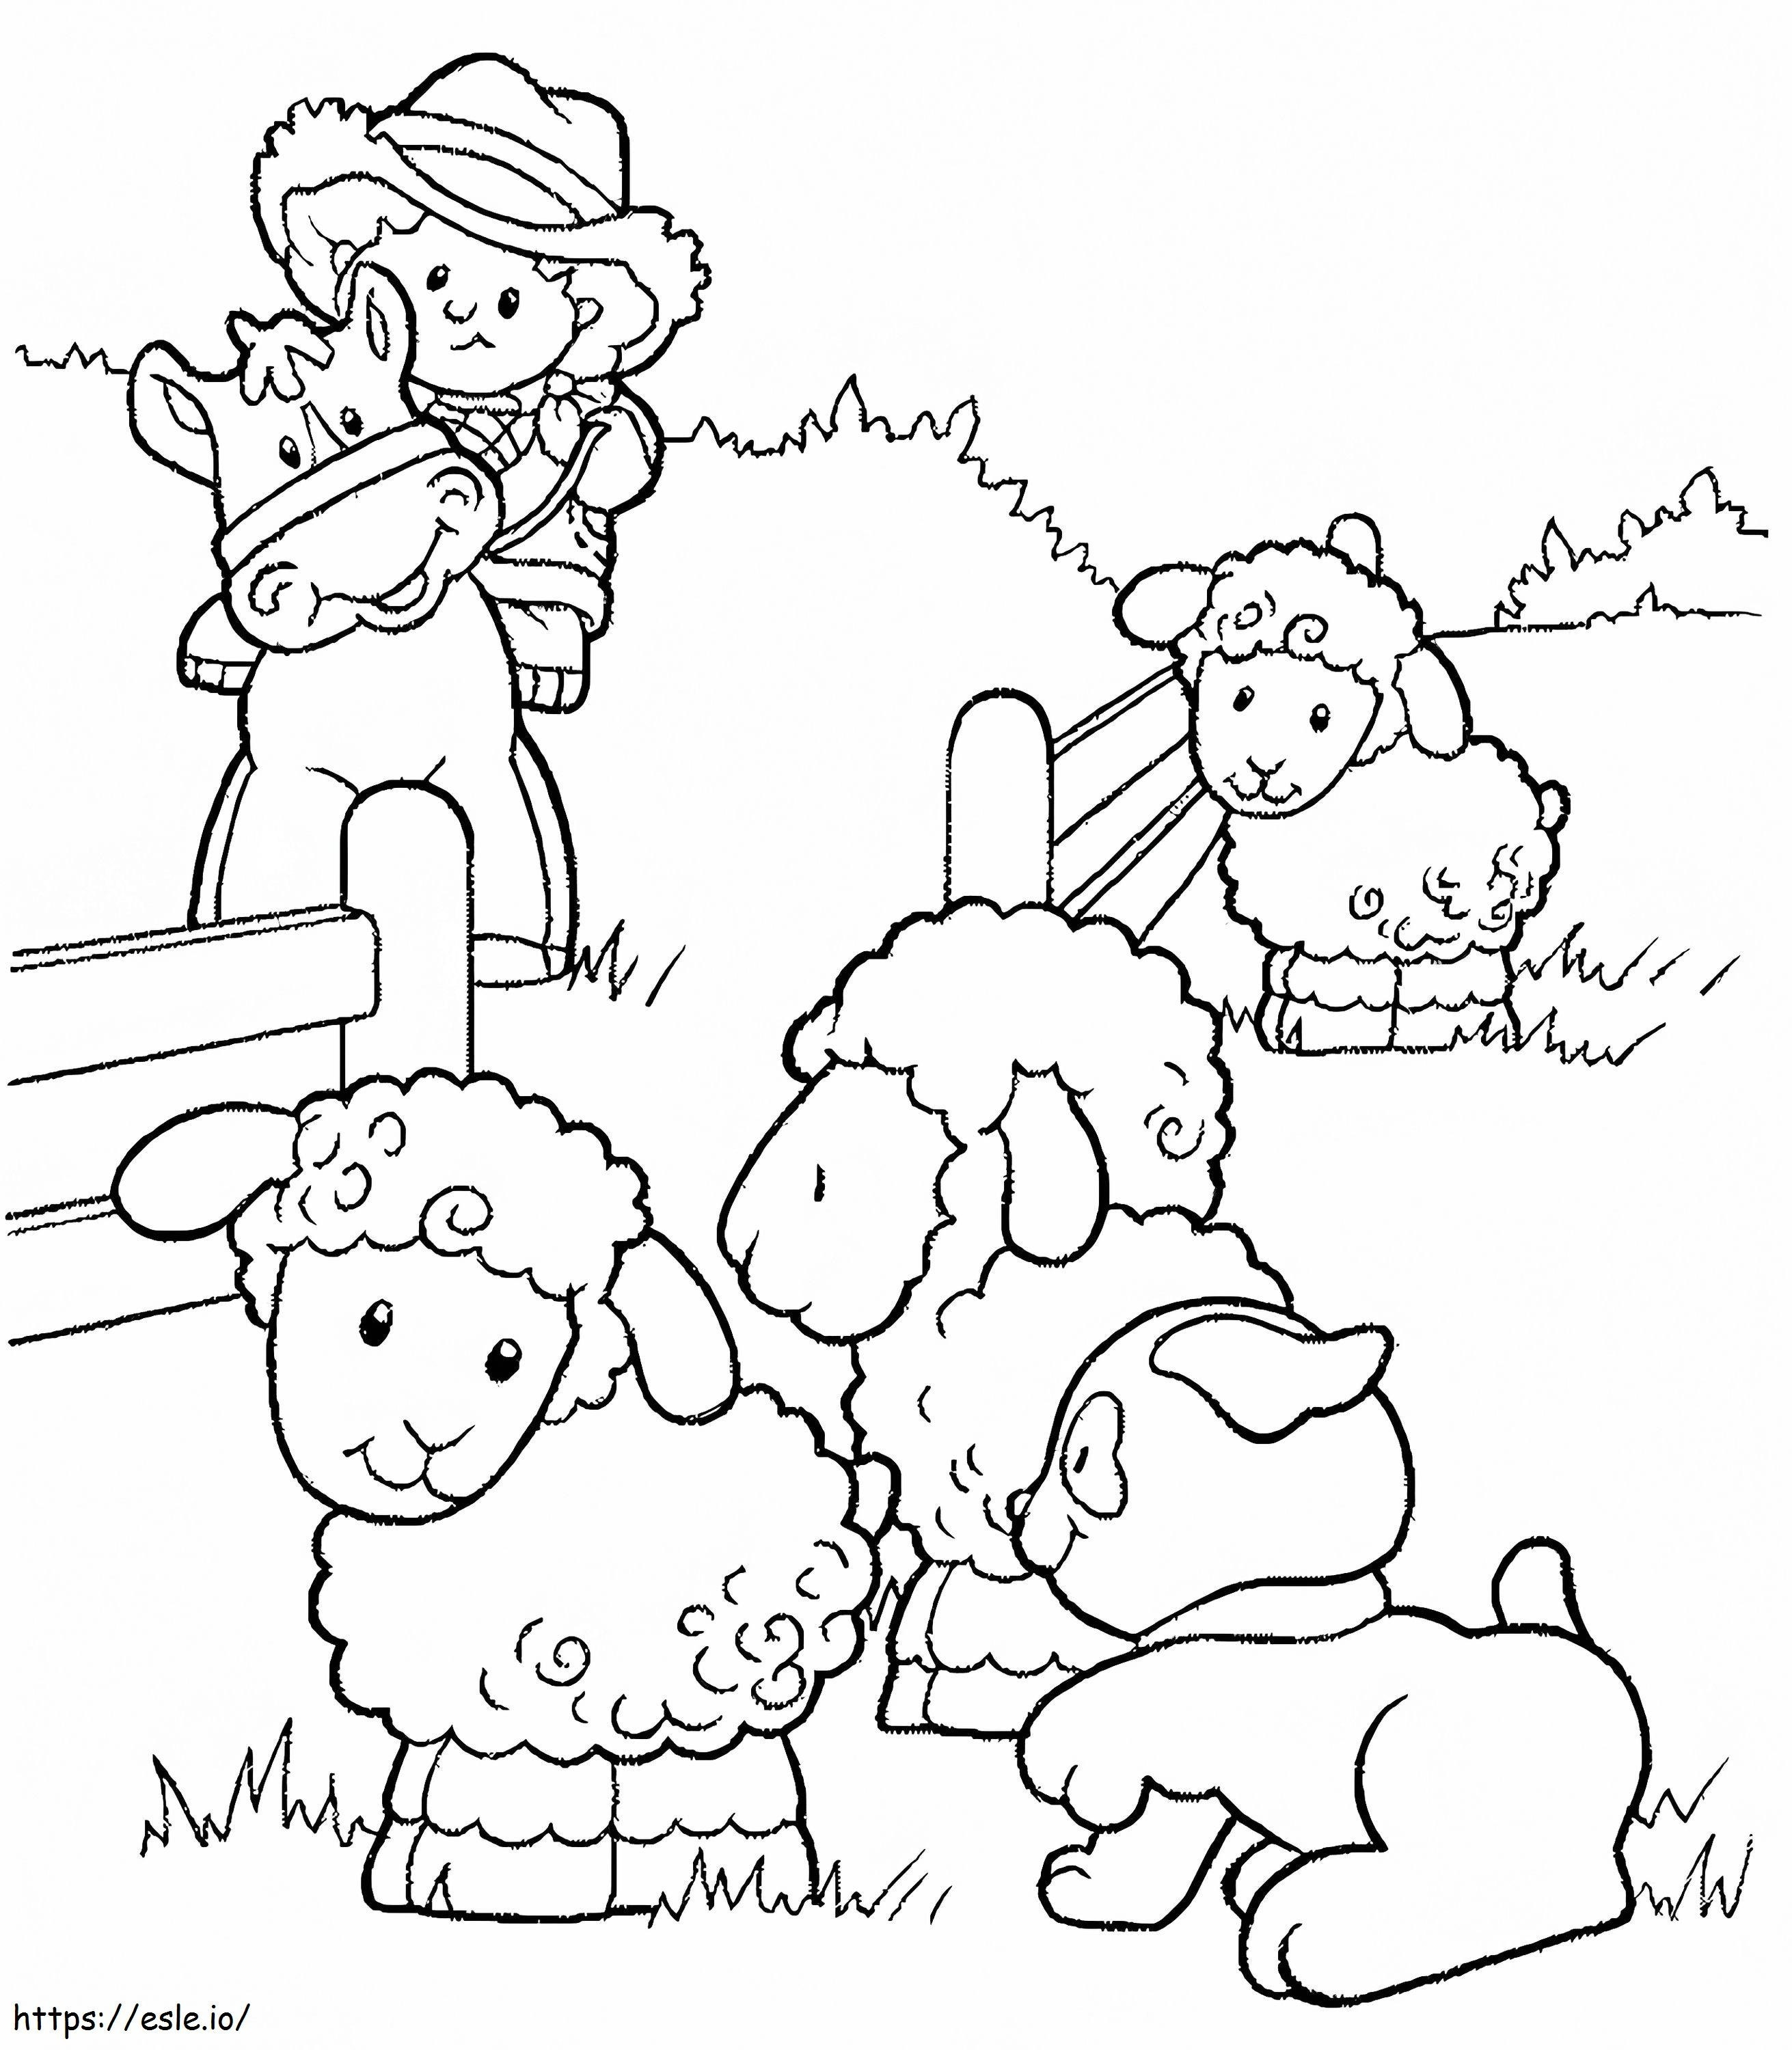 Schafe mit Tieren ausmalbilder